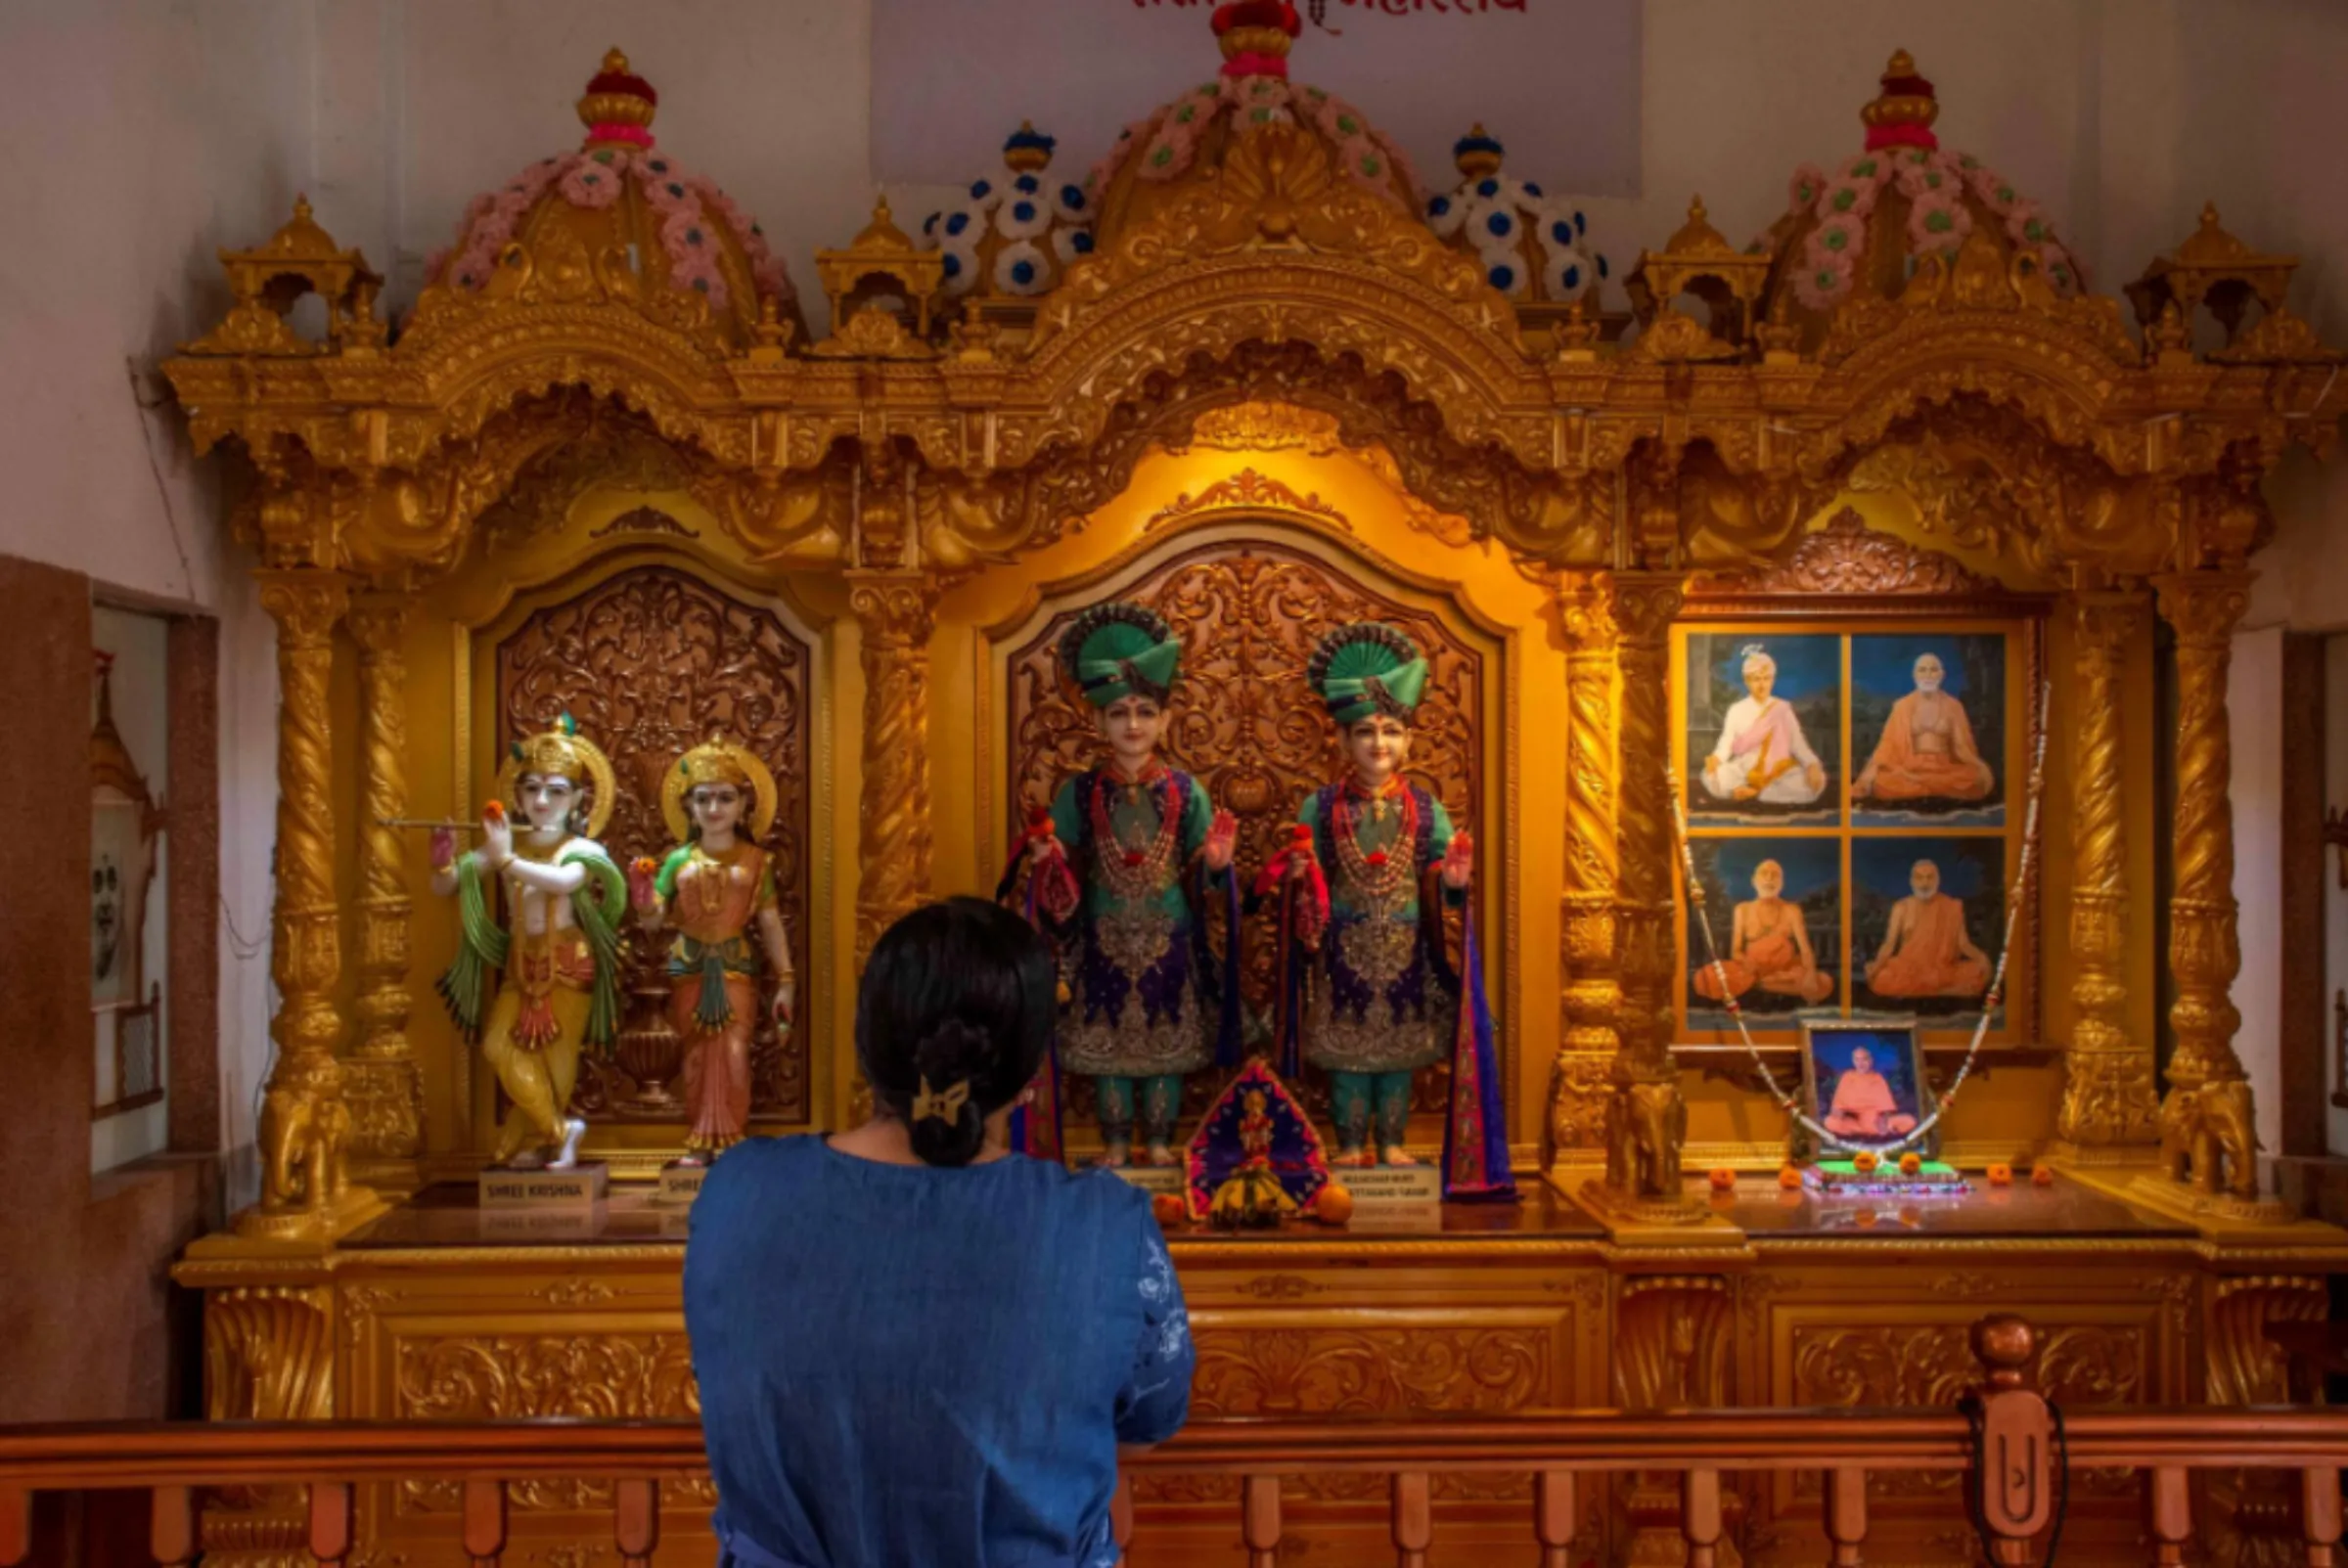 An Asian woman prays inside an Indian temple in Jinga District Uganda, October 1, 2022